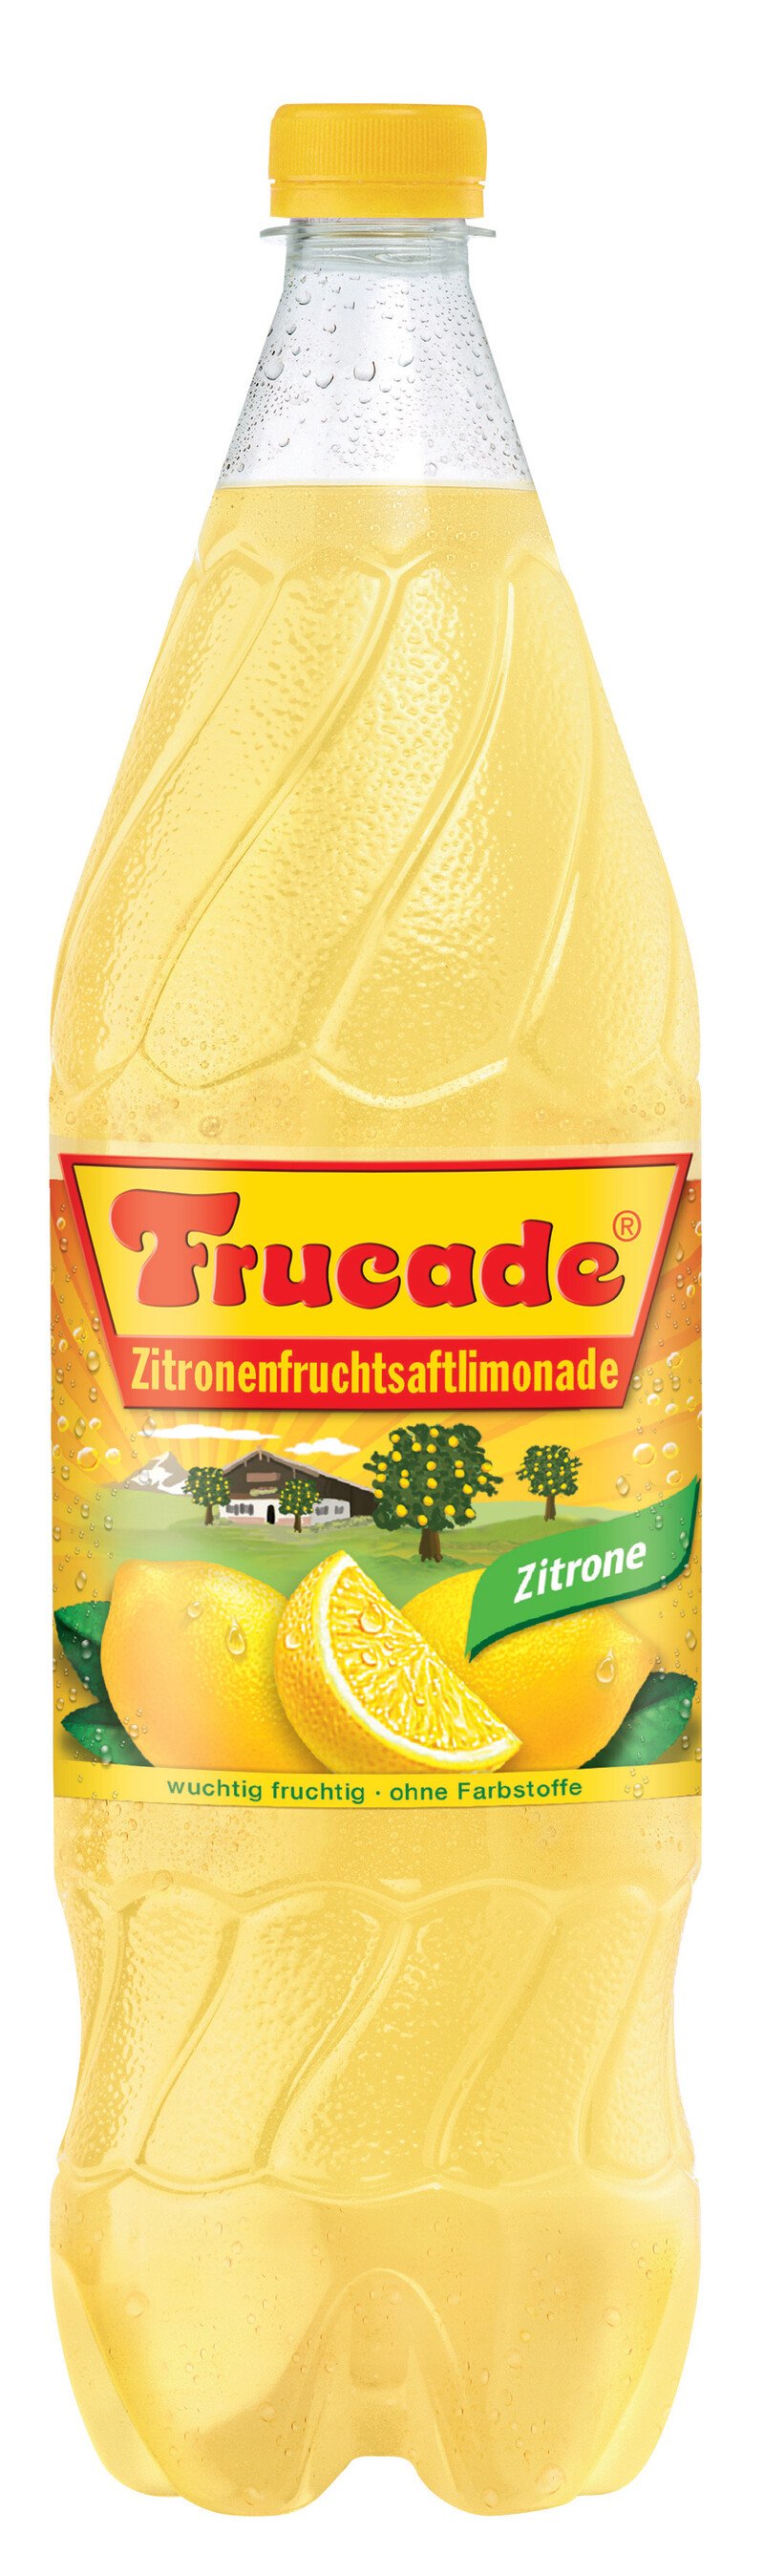 Frucade Zitrone PET Tr. (6 Fl. à 1,5 Lt.) 